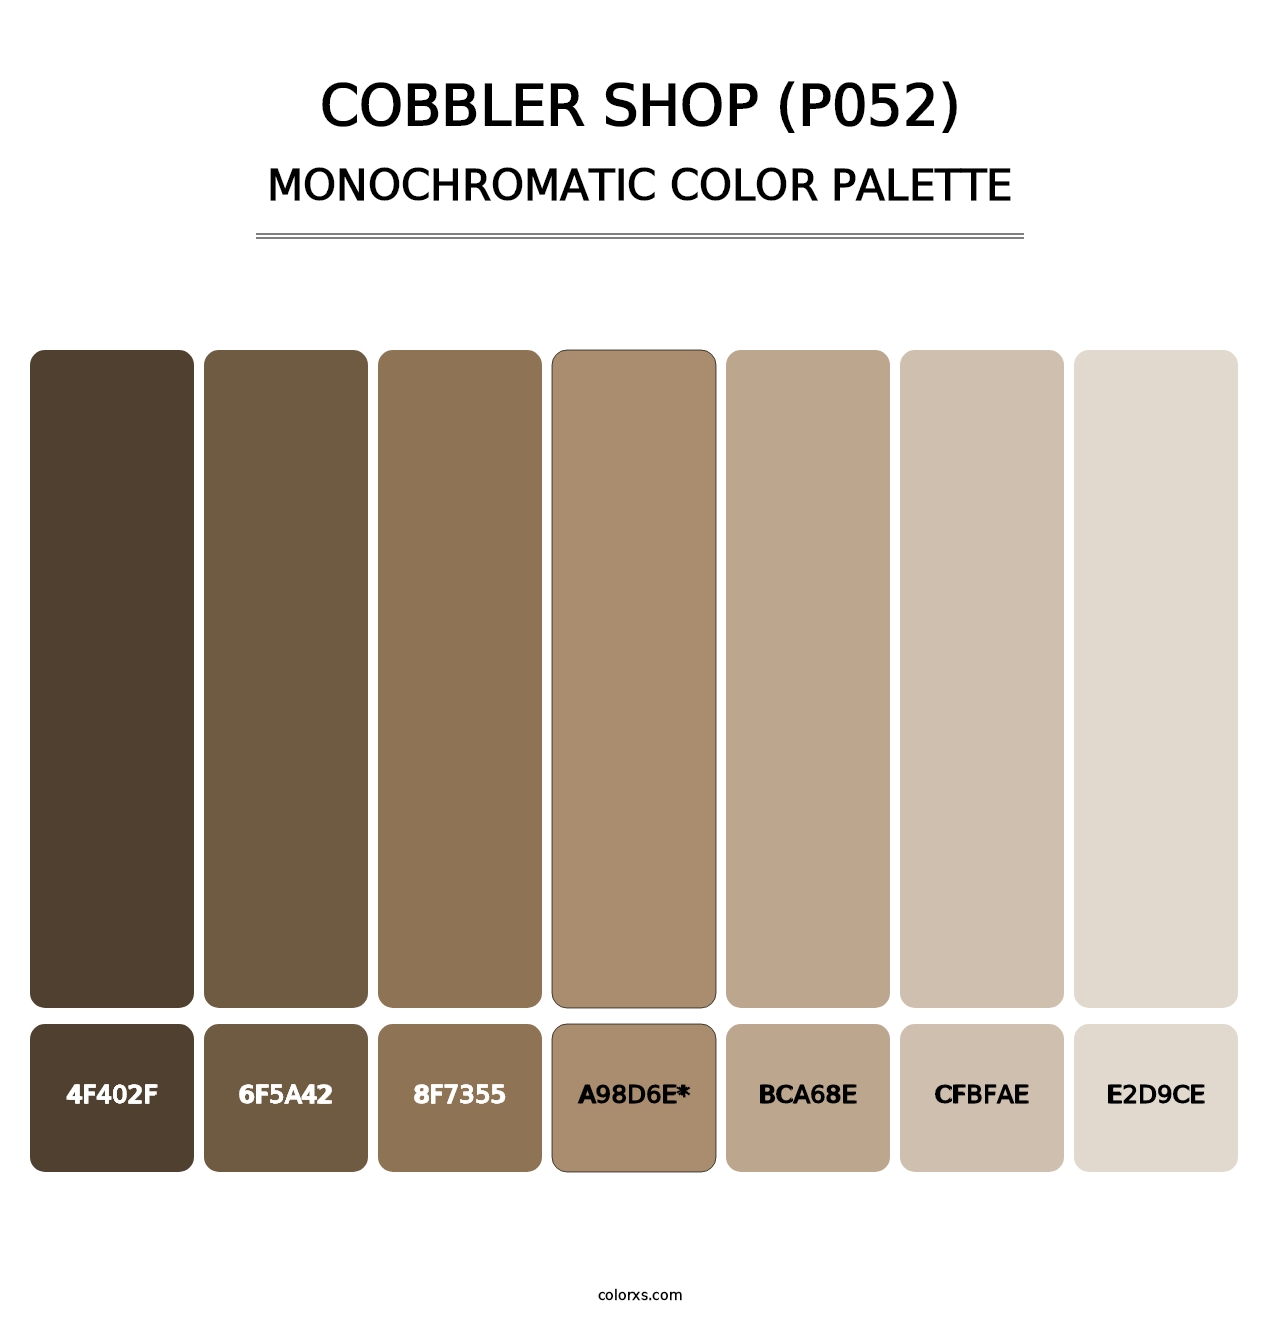 Cobbler Shop (P052) - Monochromatic Color Palette